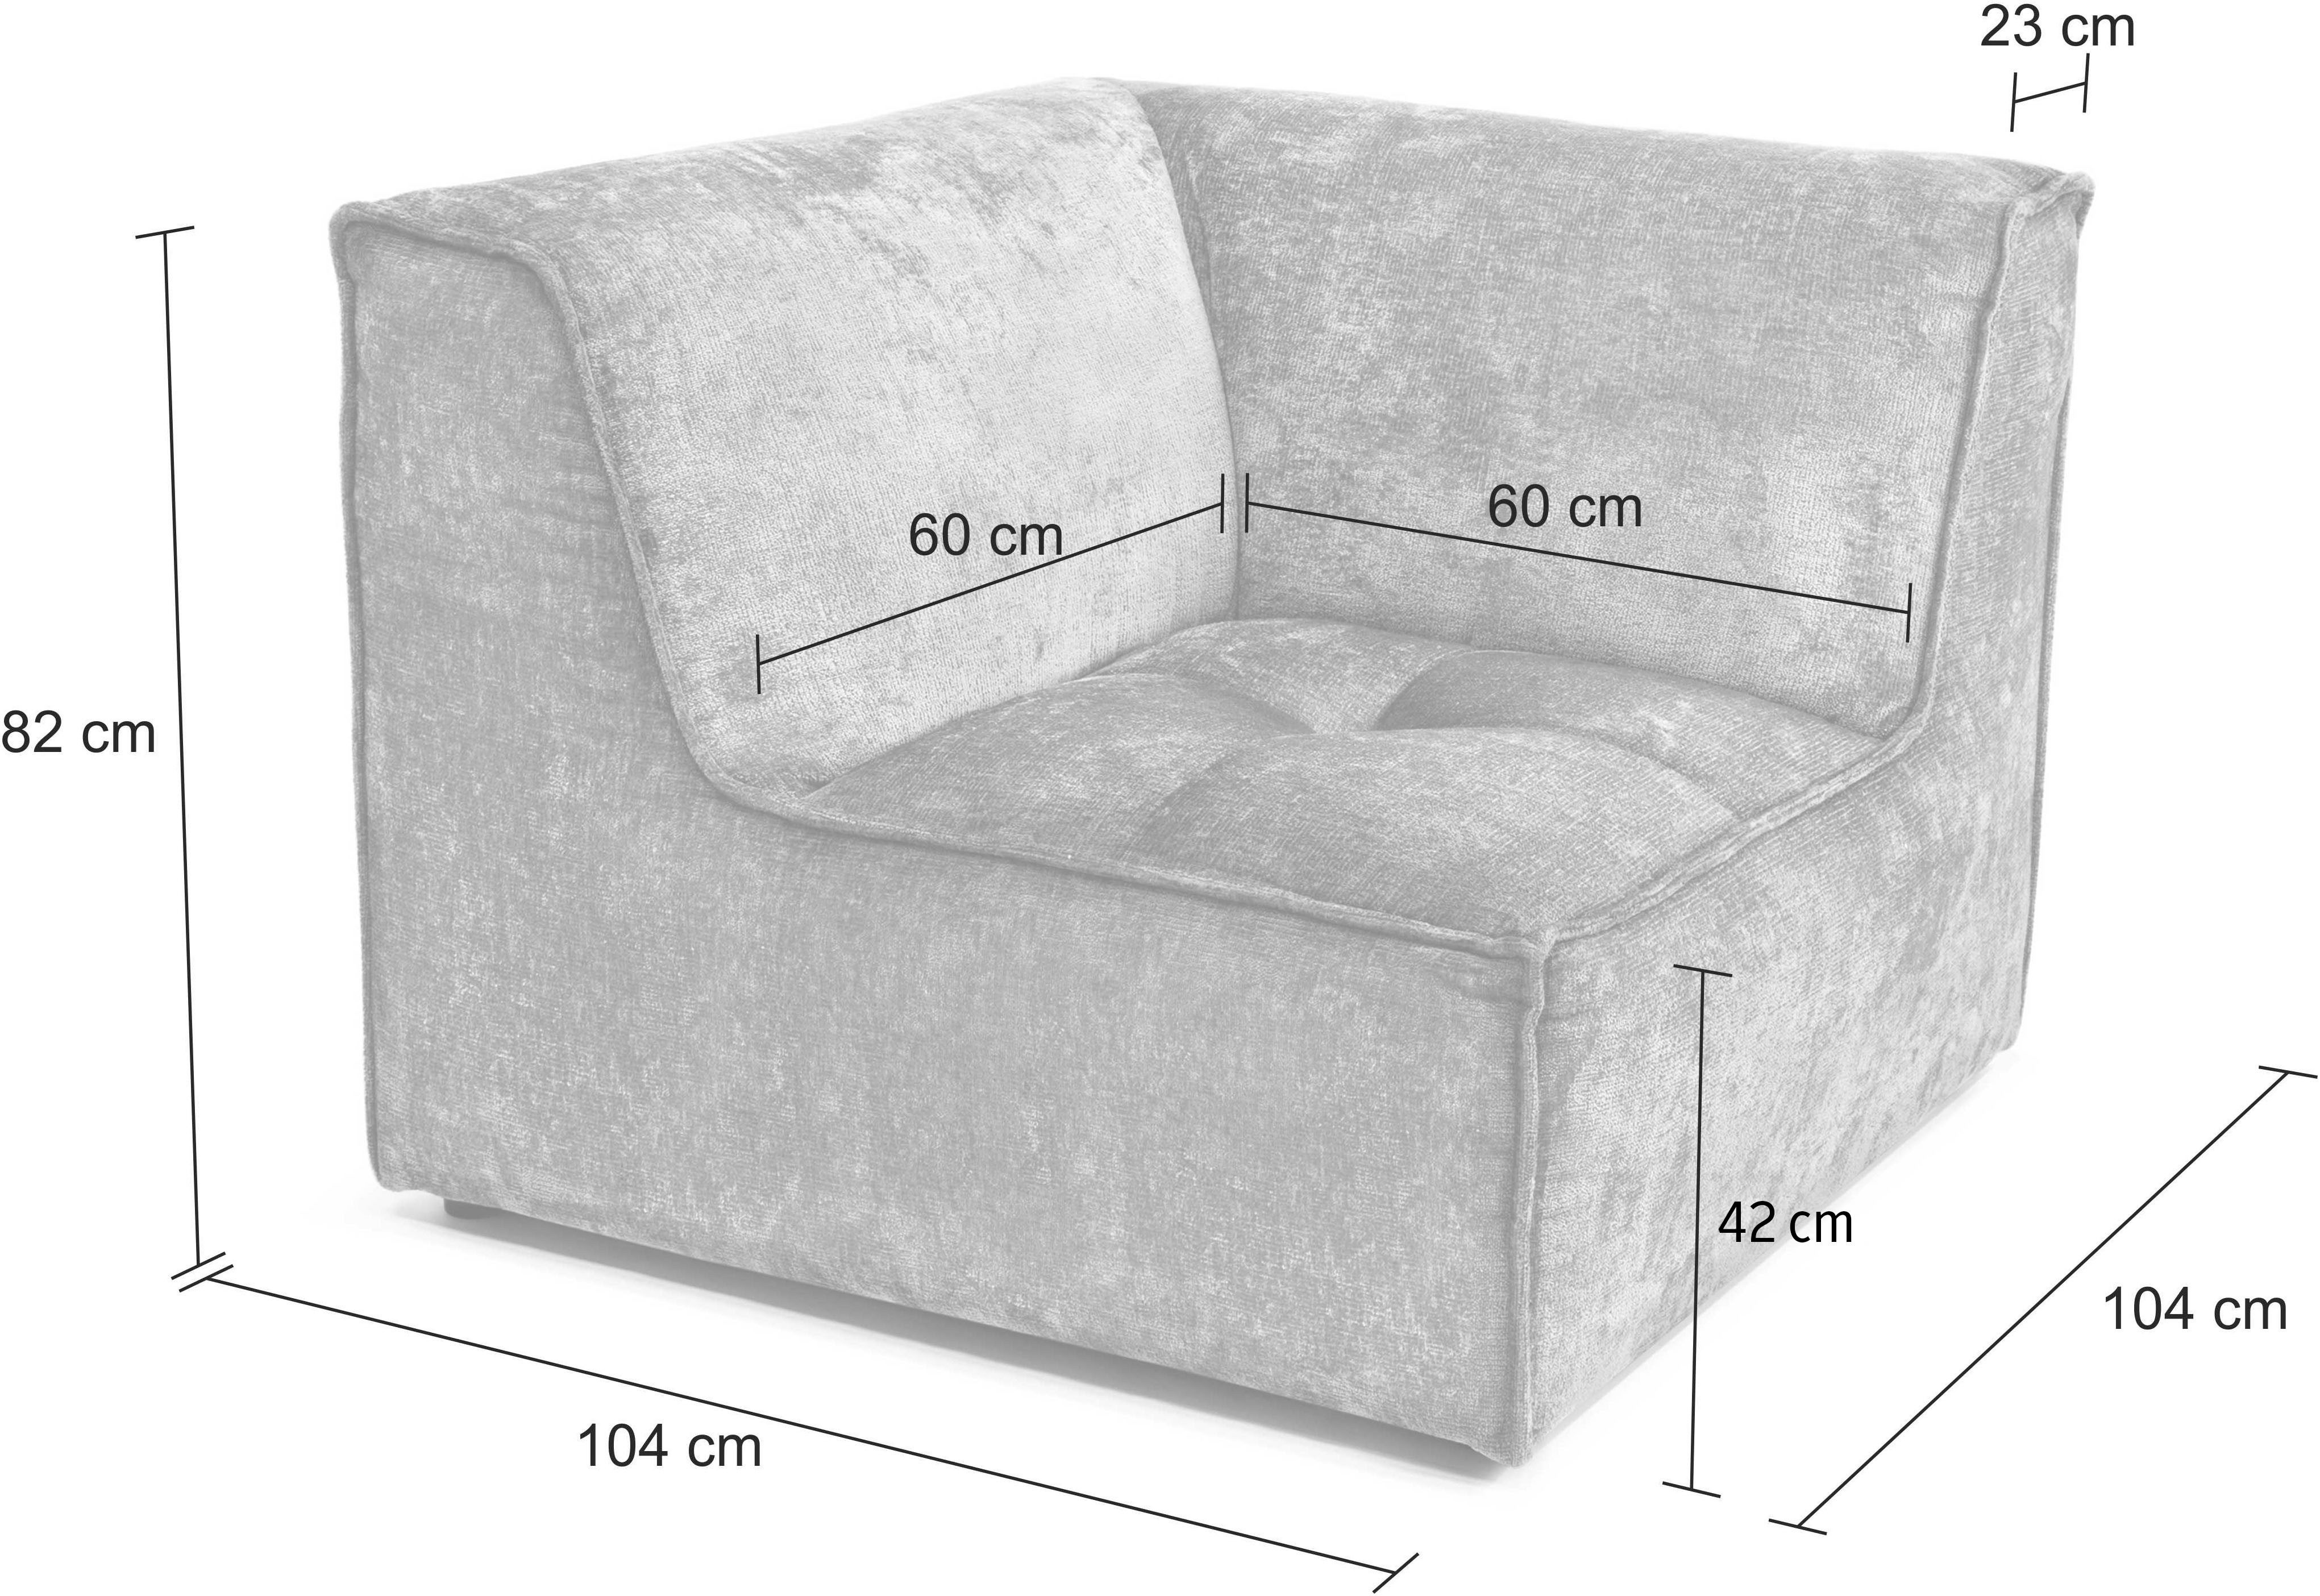 hellgrau Monolid für separat als Modul oder individuelle Sofa-Eckelement St), Zusammenstellung RAUM.ID verwendbar, (1